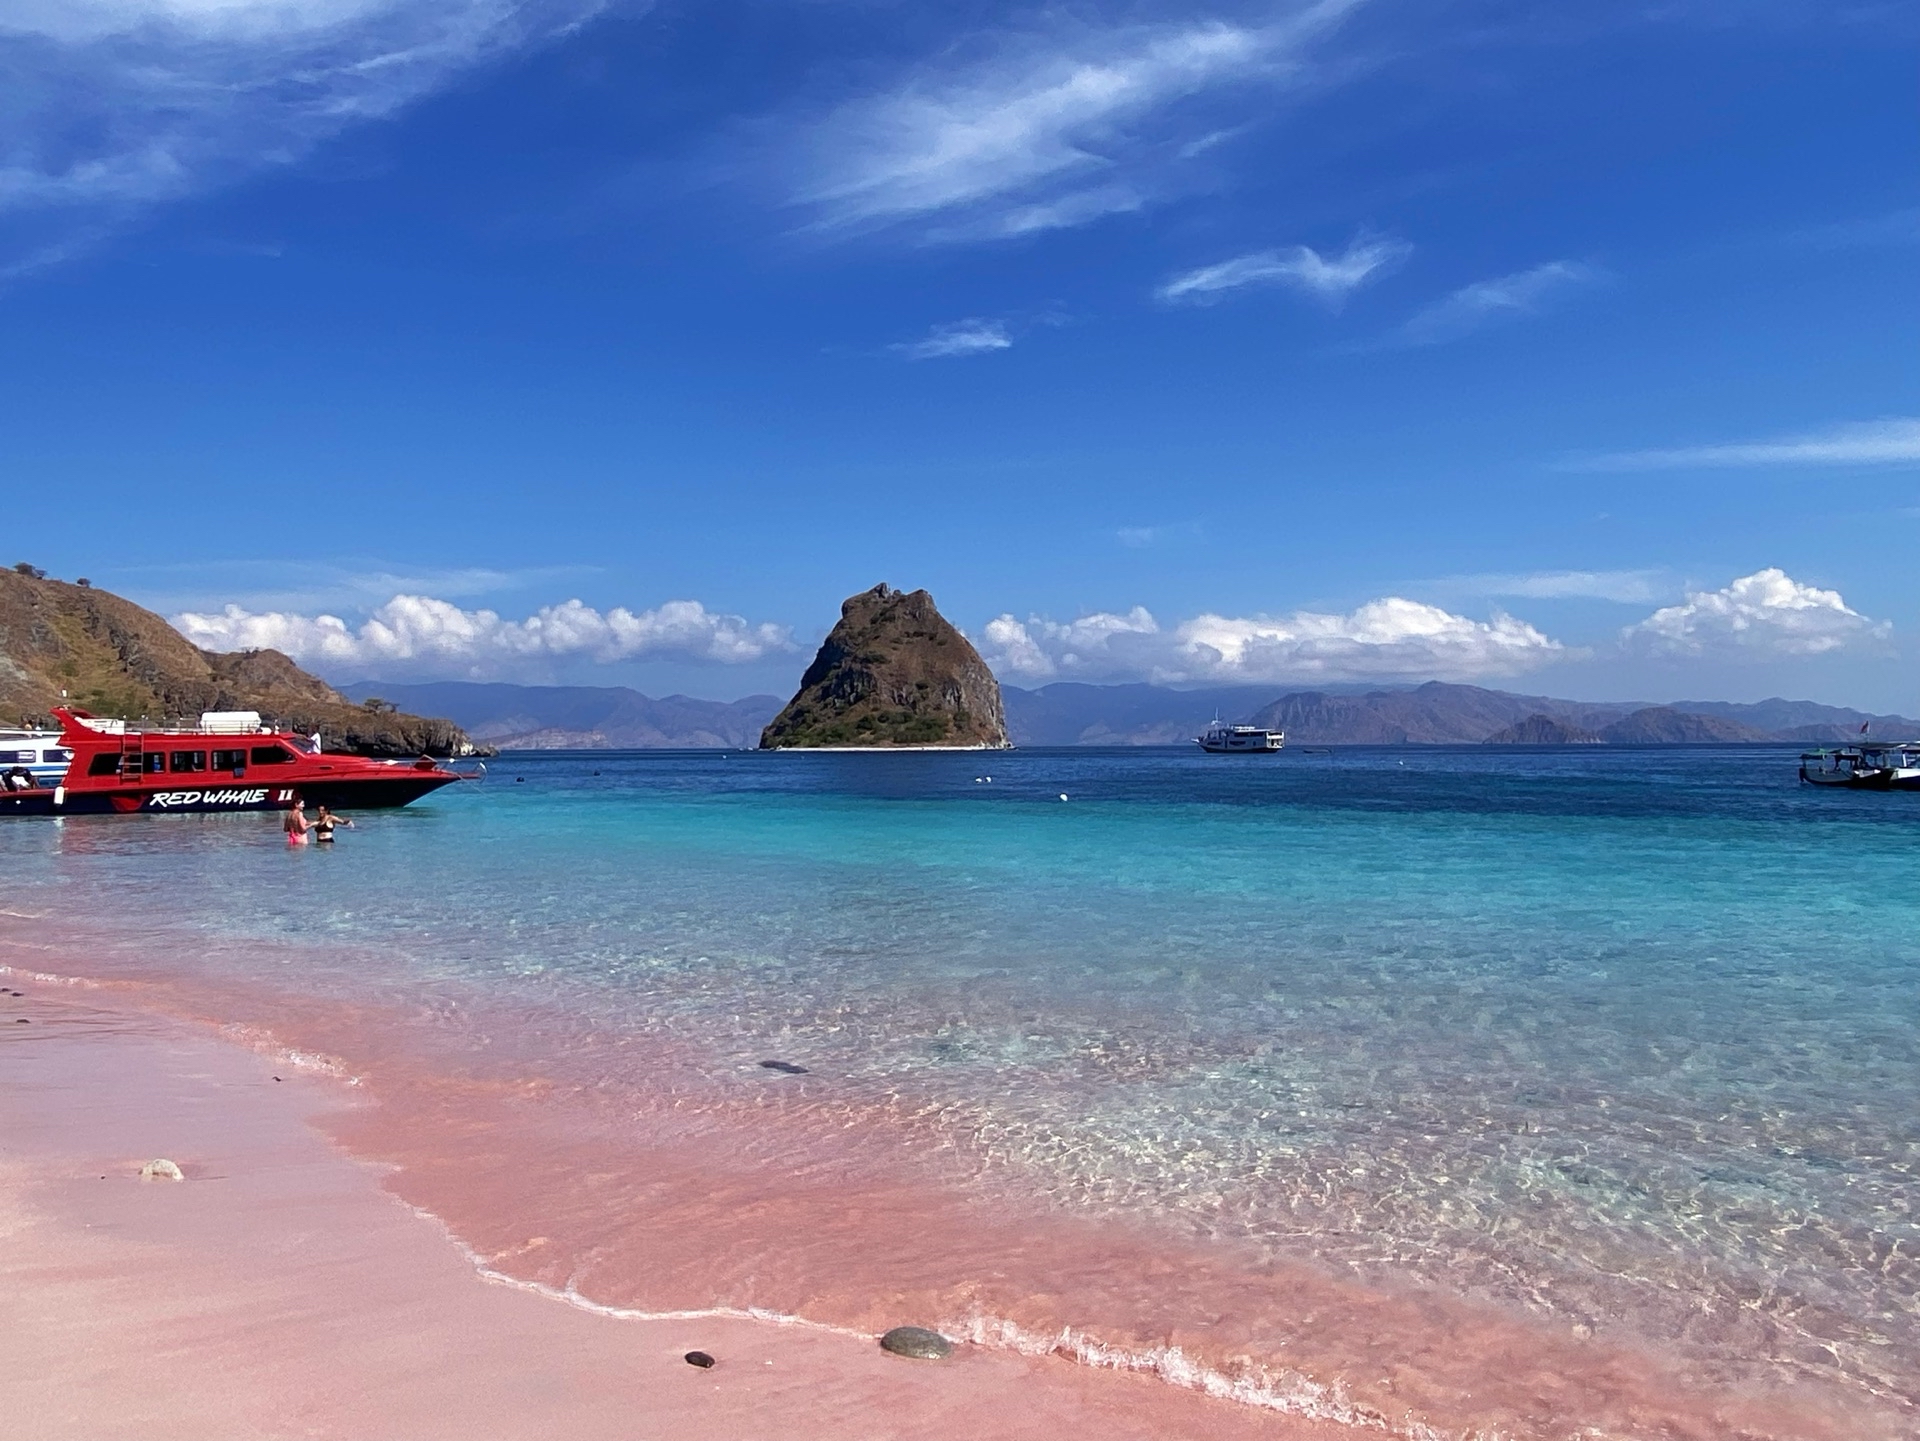 一定要去印尼科莫多岛看龙和追魔鬼鱼啊！粉色沙滩超值！